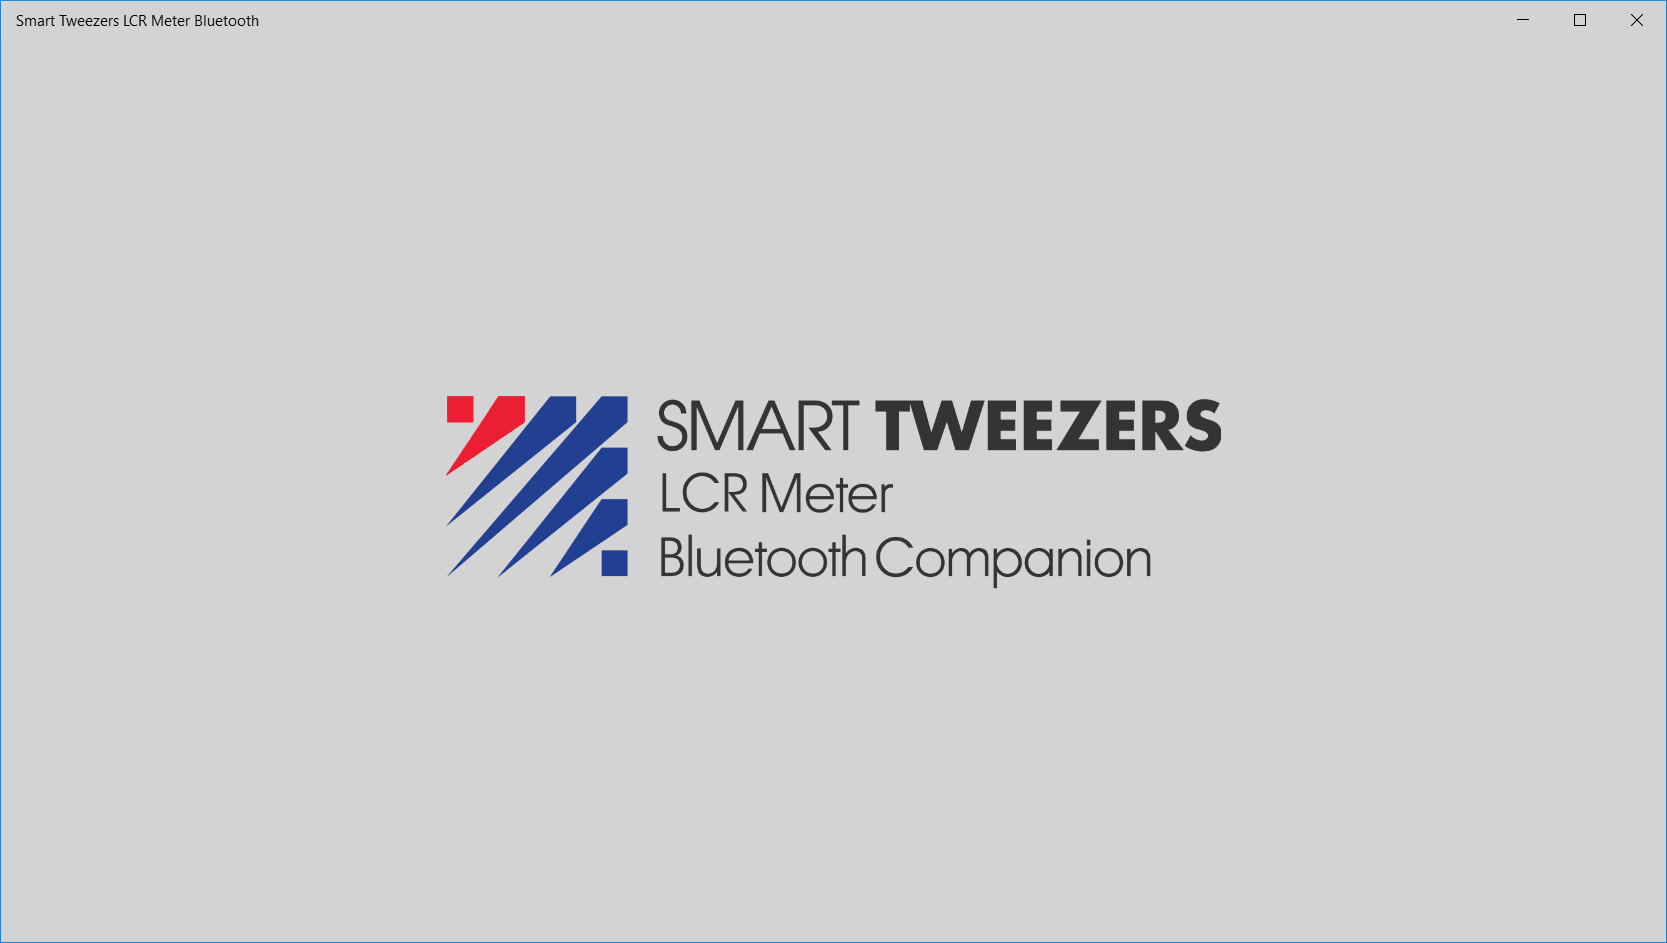 Smart Tweezers LCR Meter Bluetooth